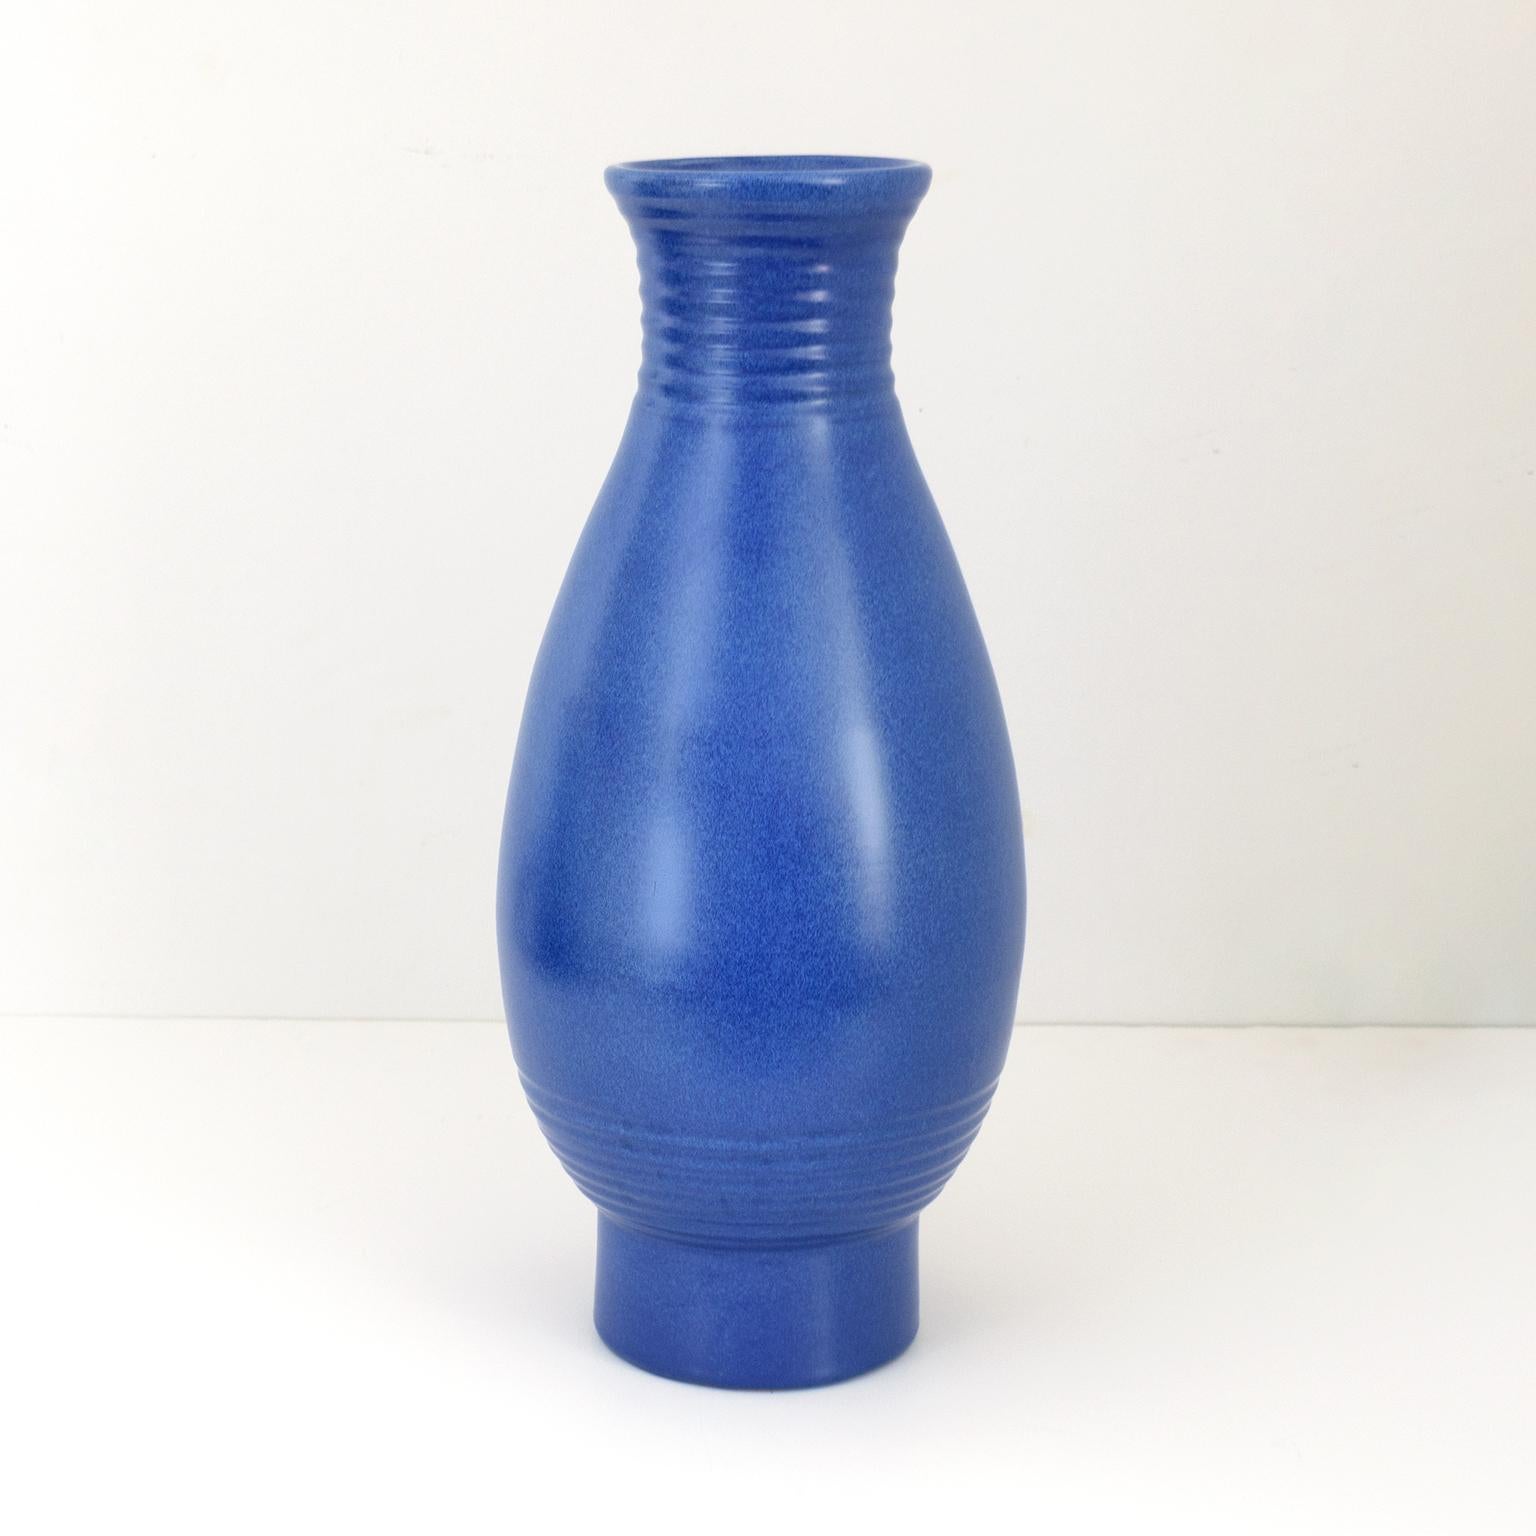 Schwedische Art-Déco-Vase des Künstlers Ewald Dahlskog in einer satten blauen Glasur, hergestellt bei Bo Fajans.
Abmessungsbereich 19